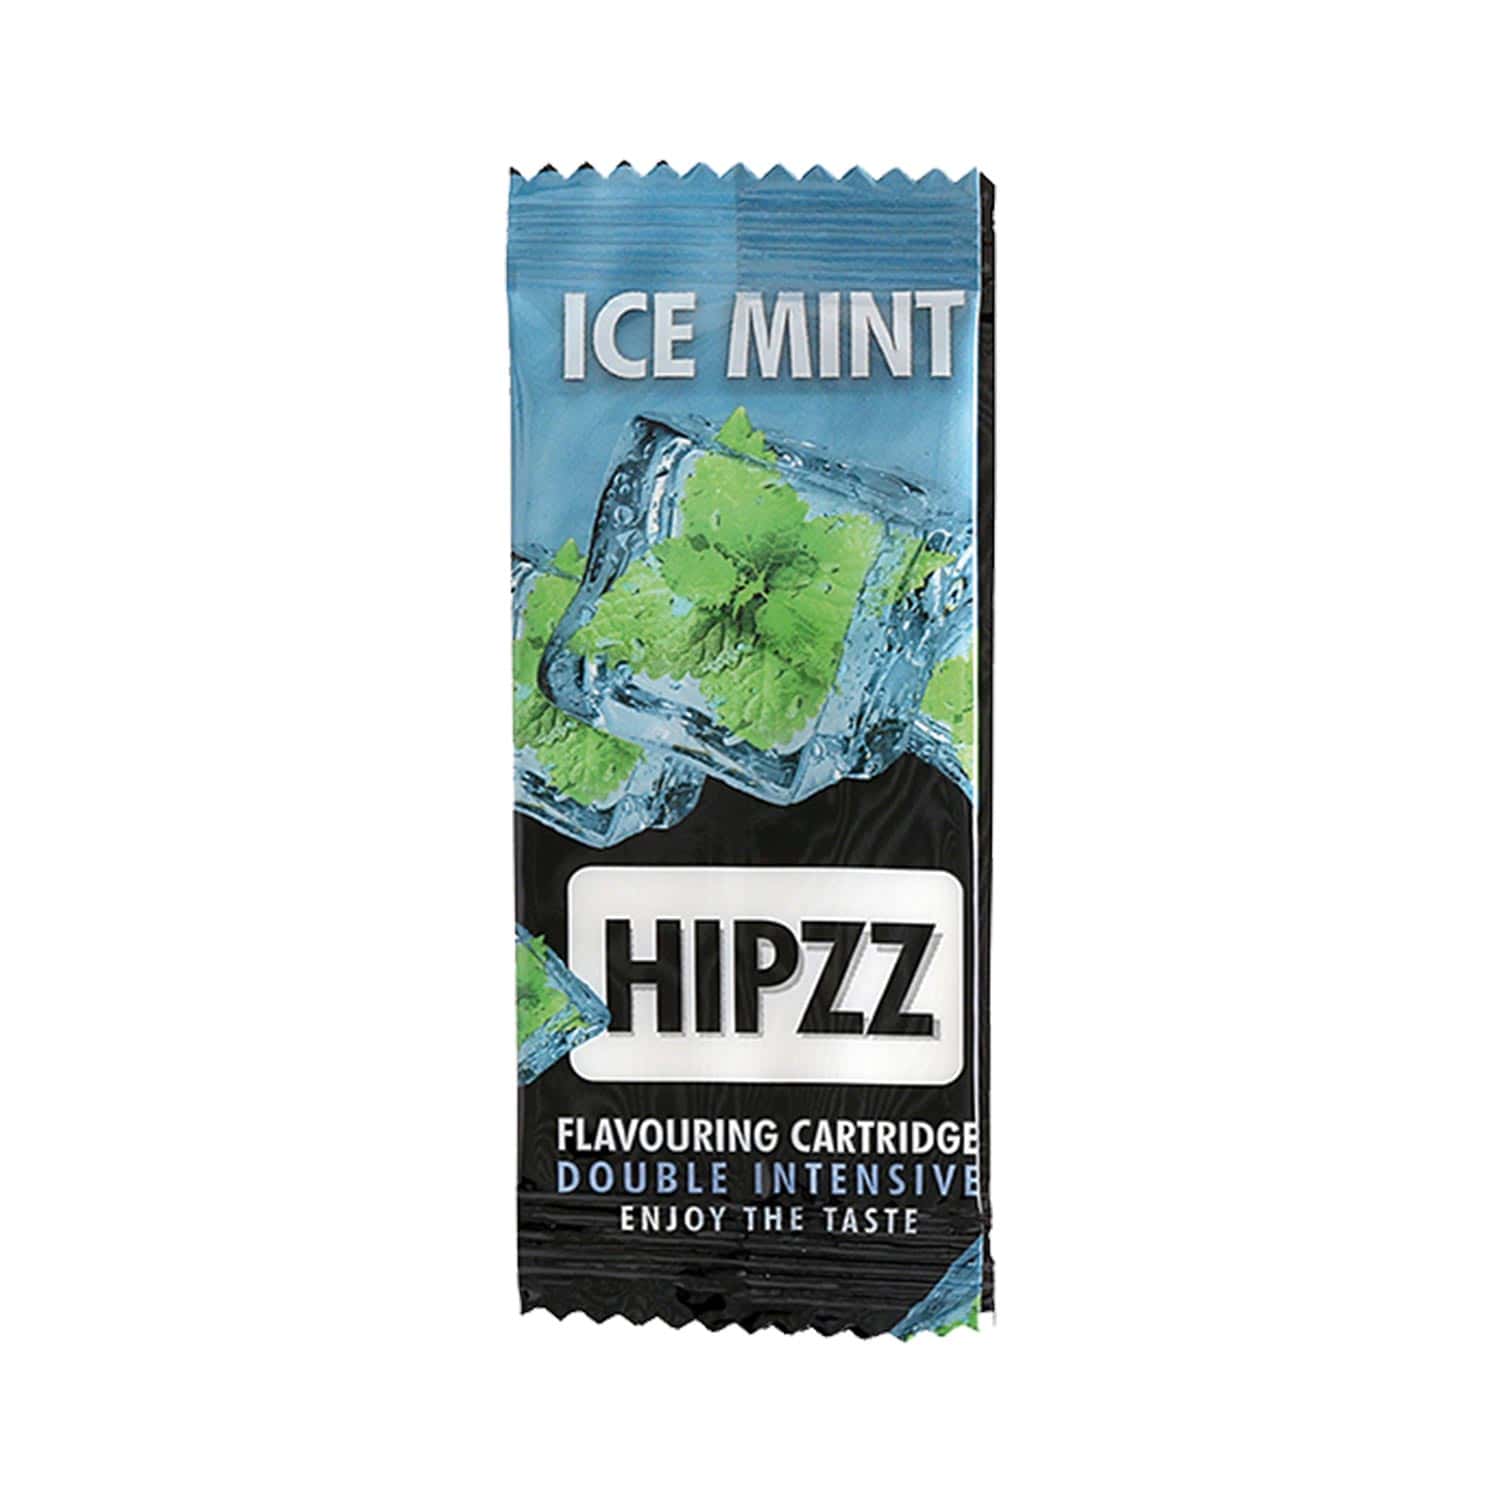 Carte Fraicheur Hipzz Menthe Glaciale (ICE MINT)